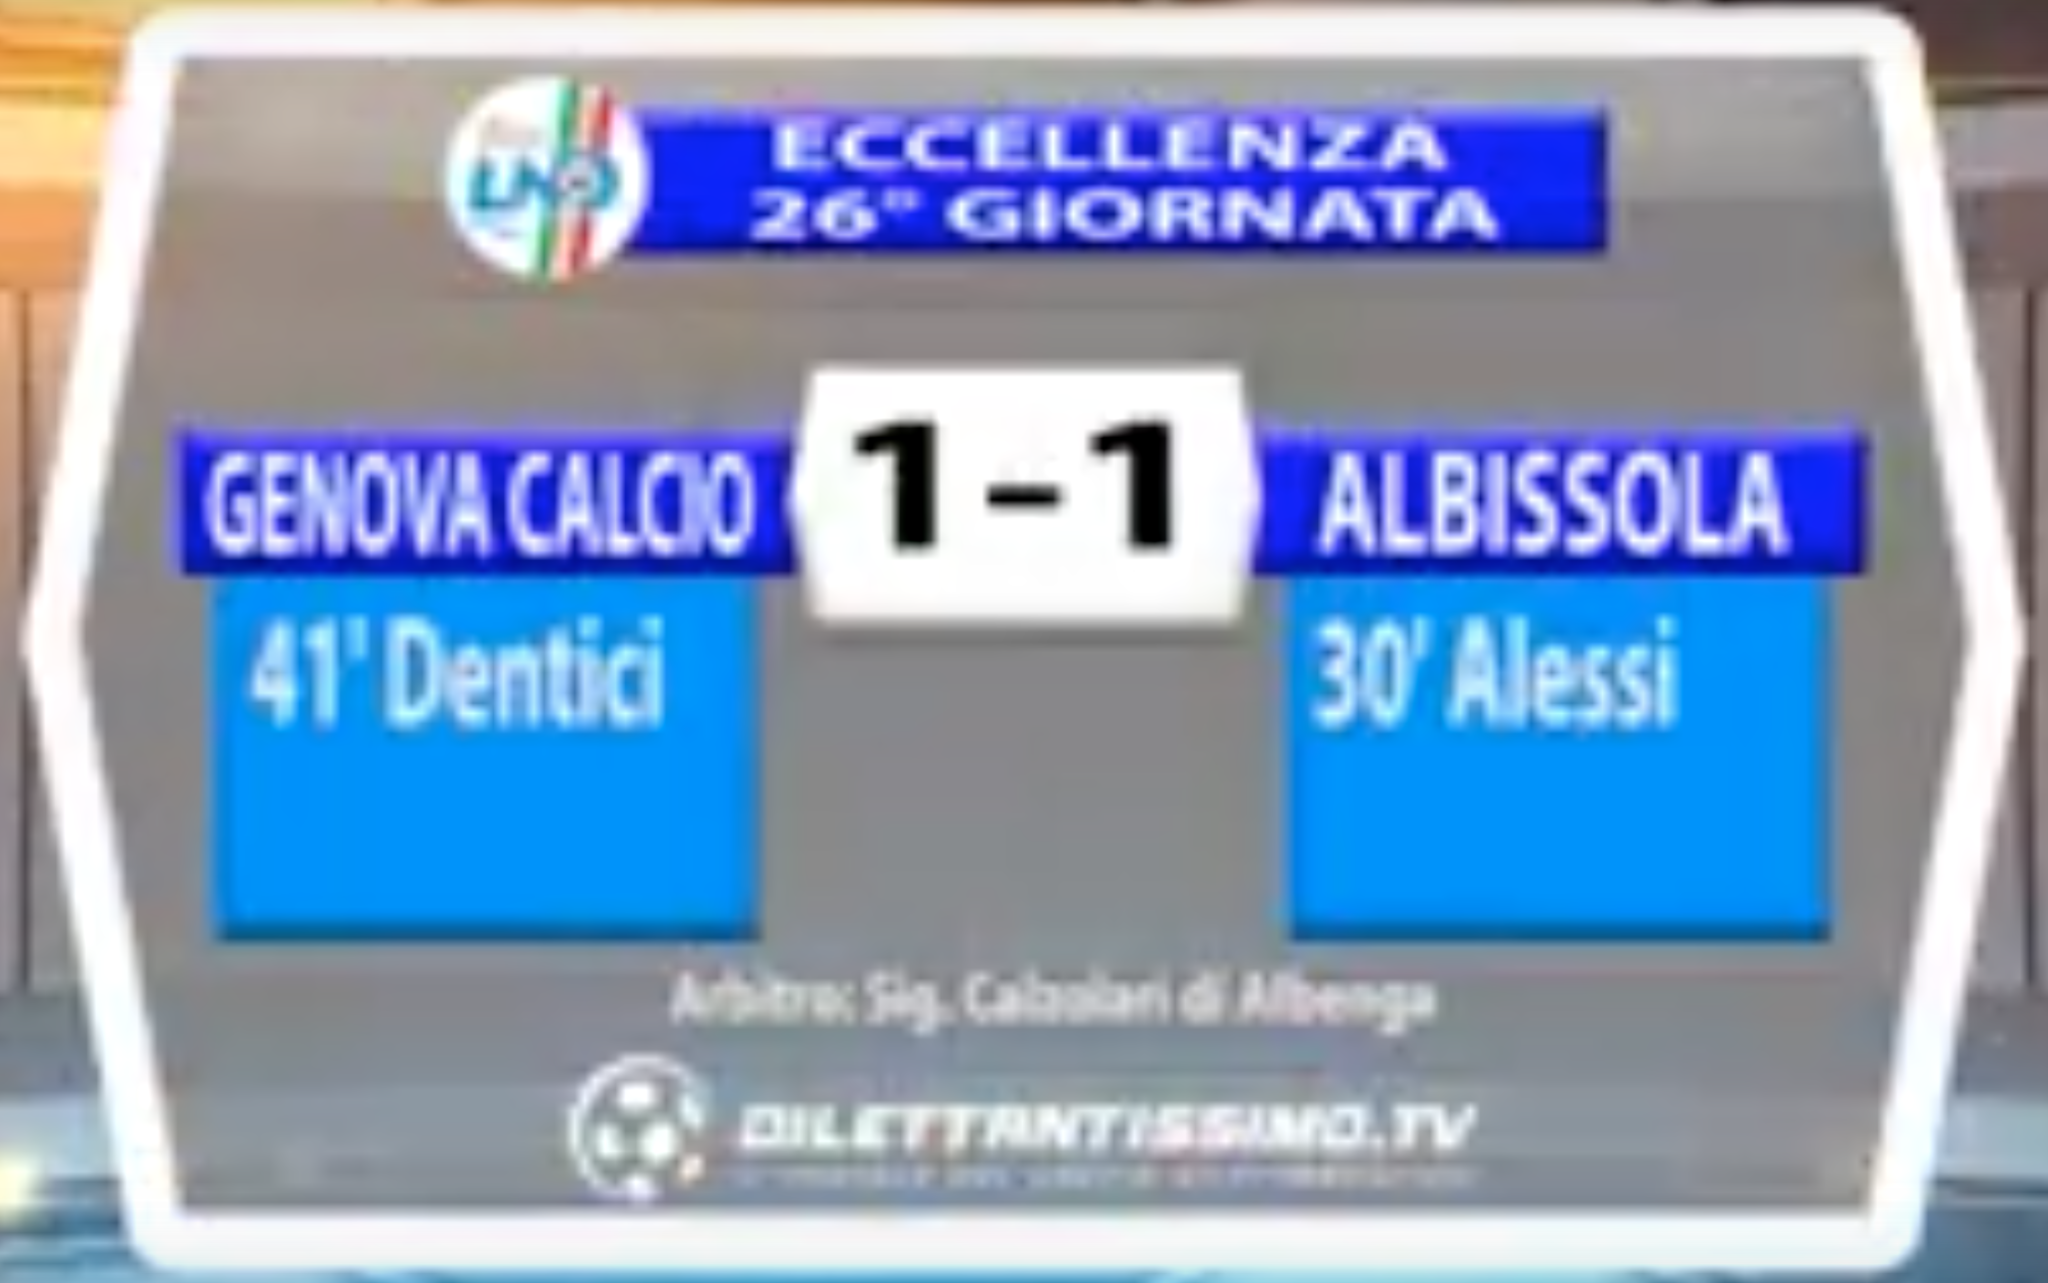 GENOVA CALCIO – ALBISSOLA 1-1 | ECCELLENZA